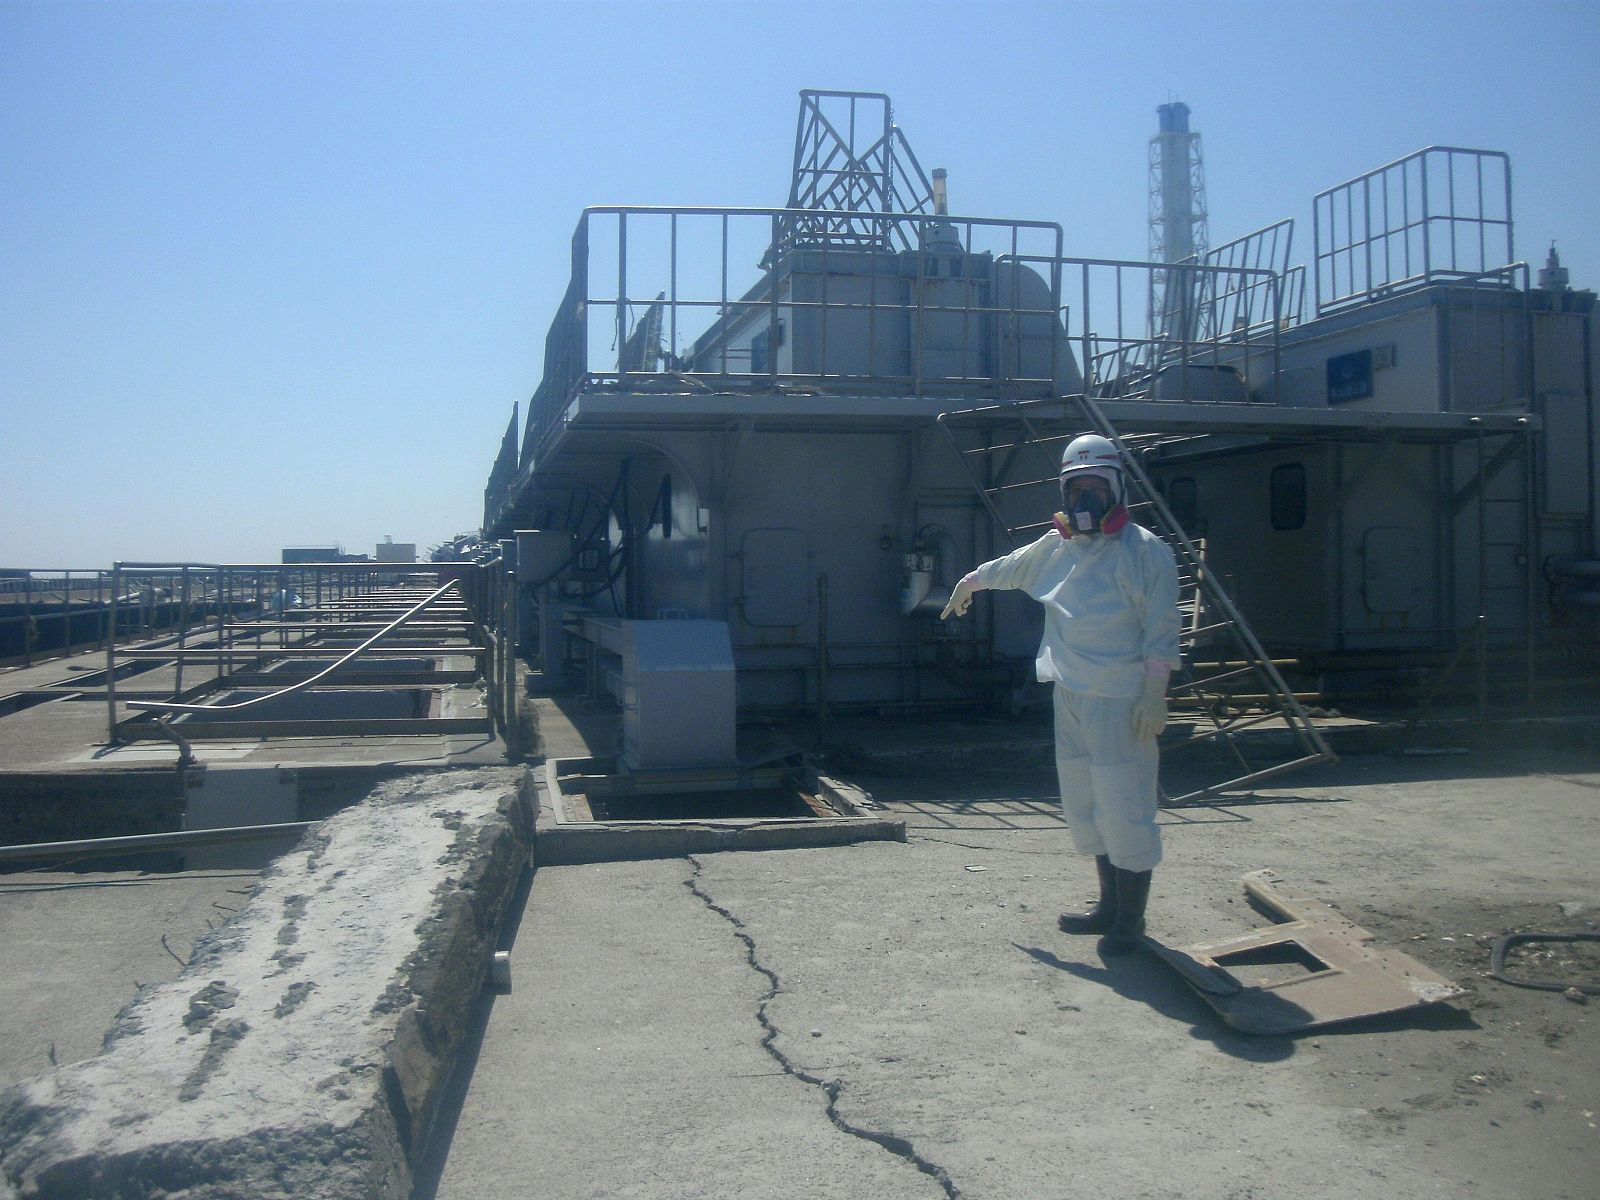 Se desconoce el procedimiento para desmantelar Fukushima pero será largo, complejo, arriesgado y caro